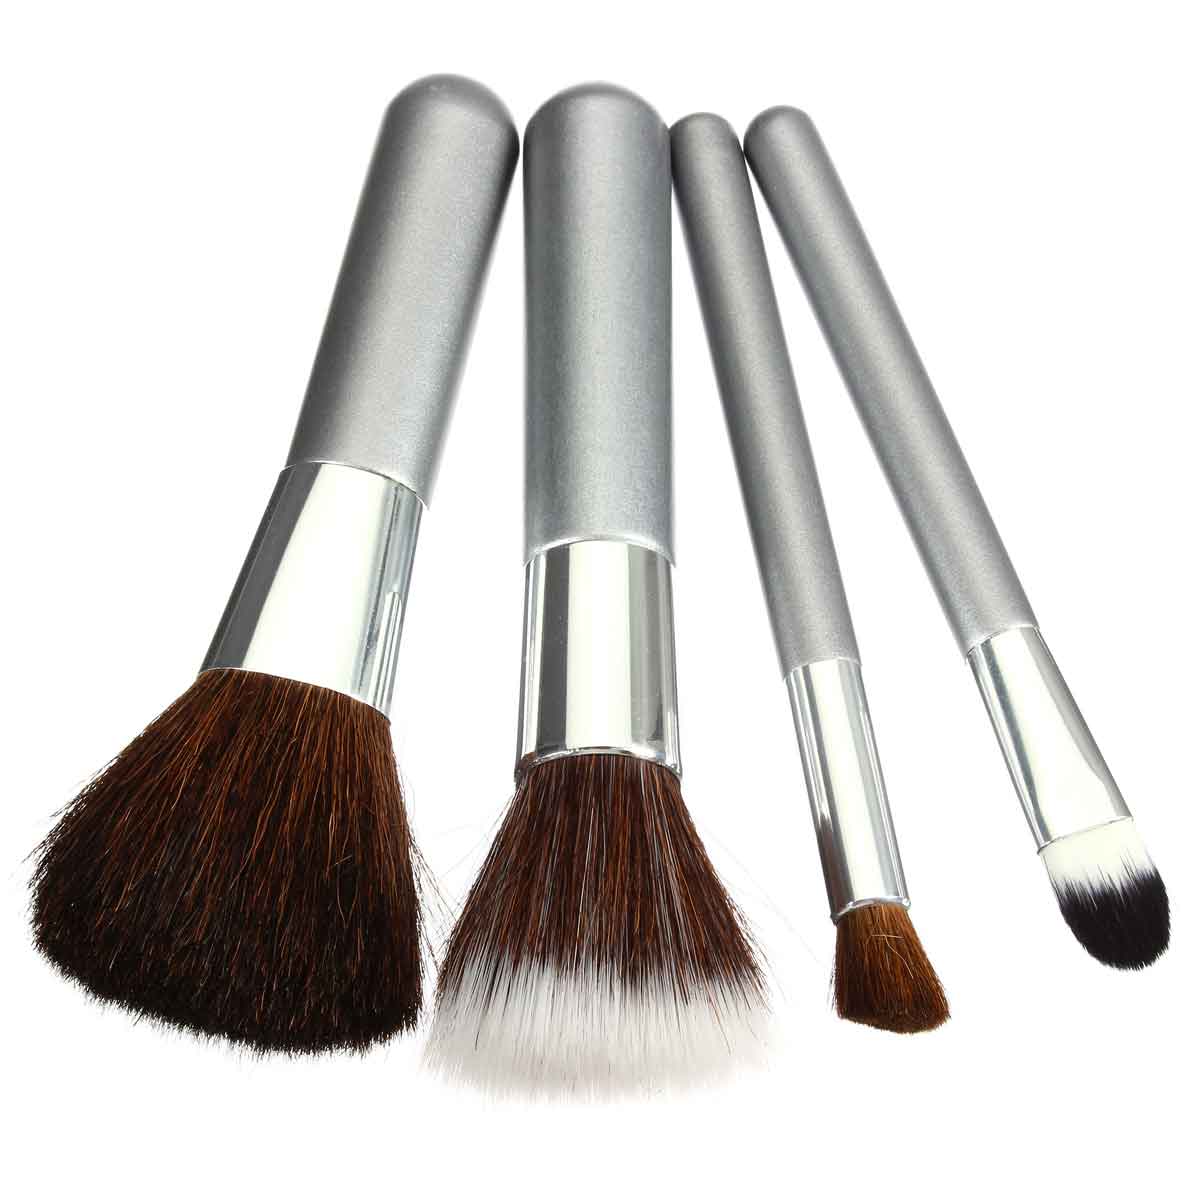 4pcs Makeup Brushes Set Eyeshadow Blush Powder Comestic Tools Kit